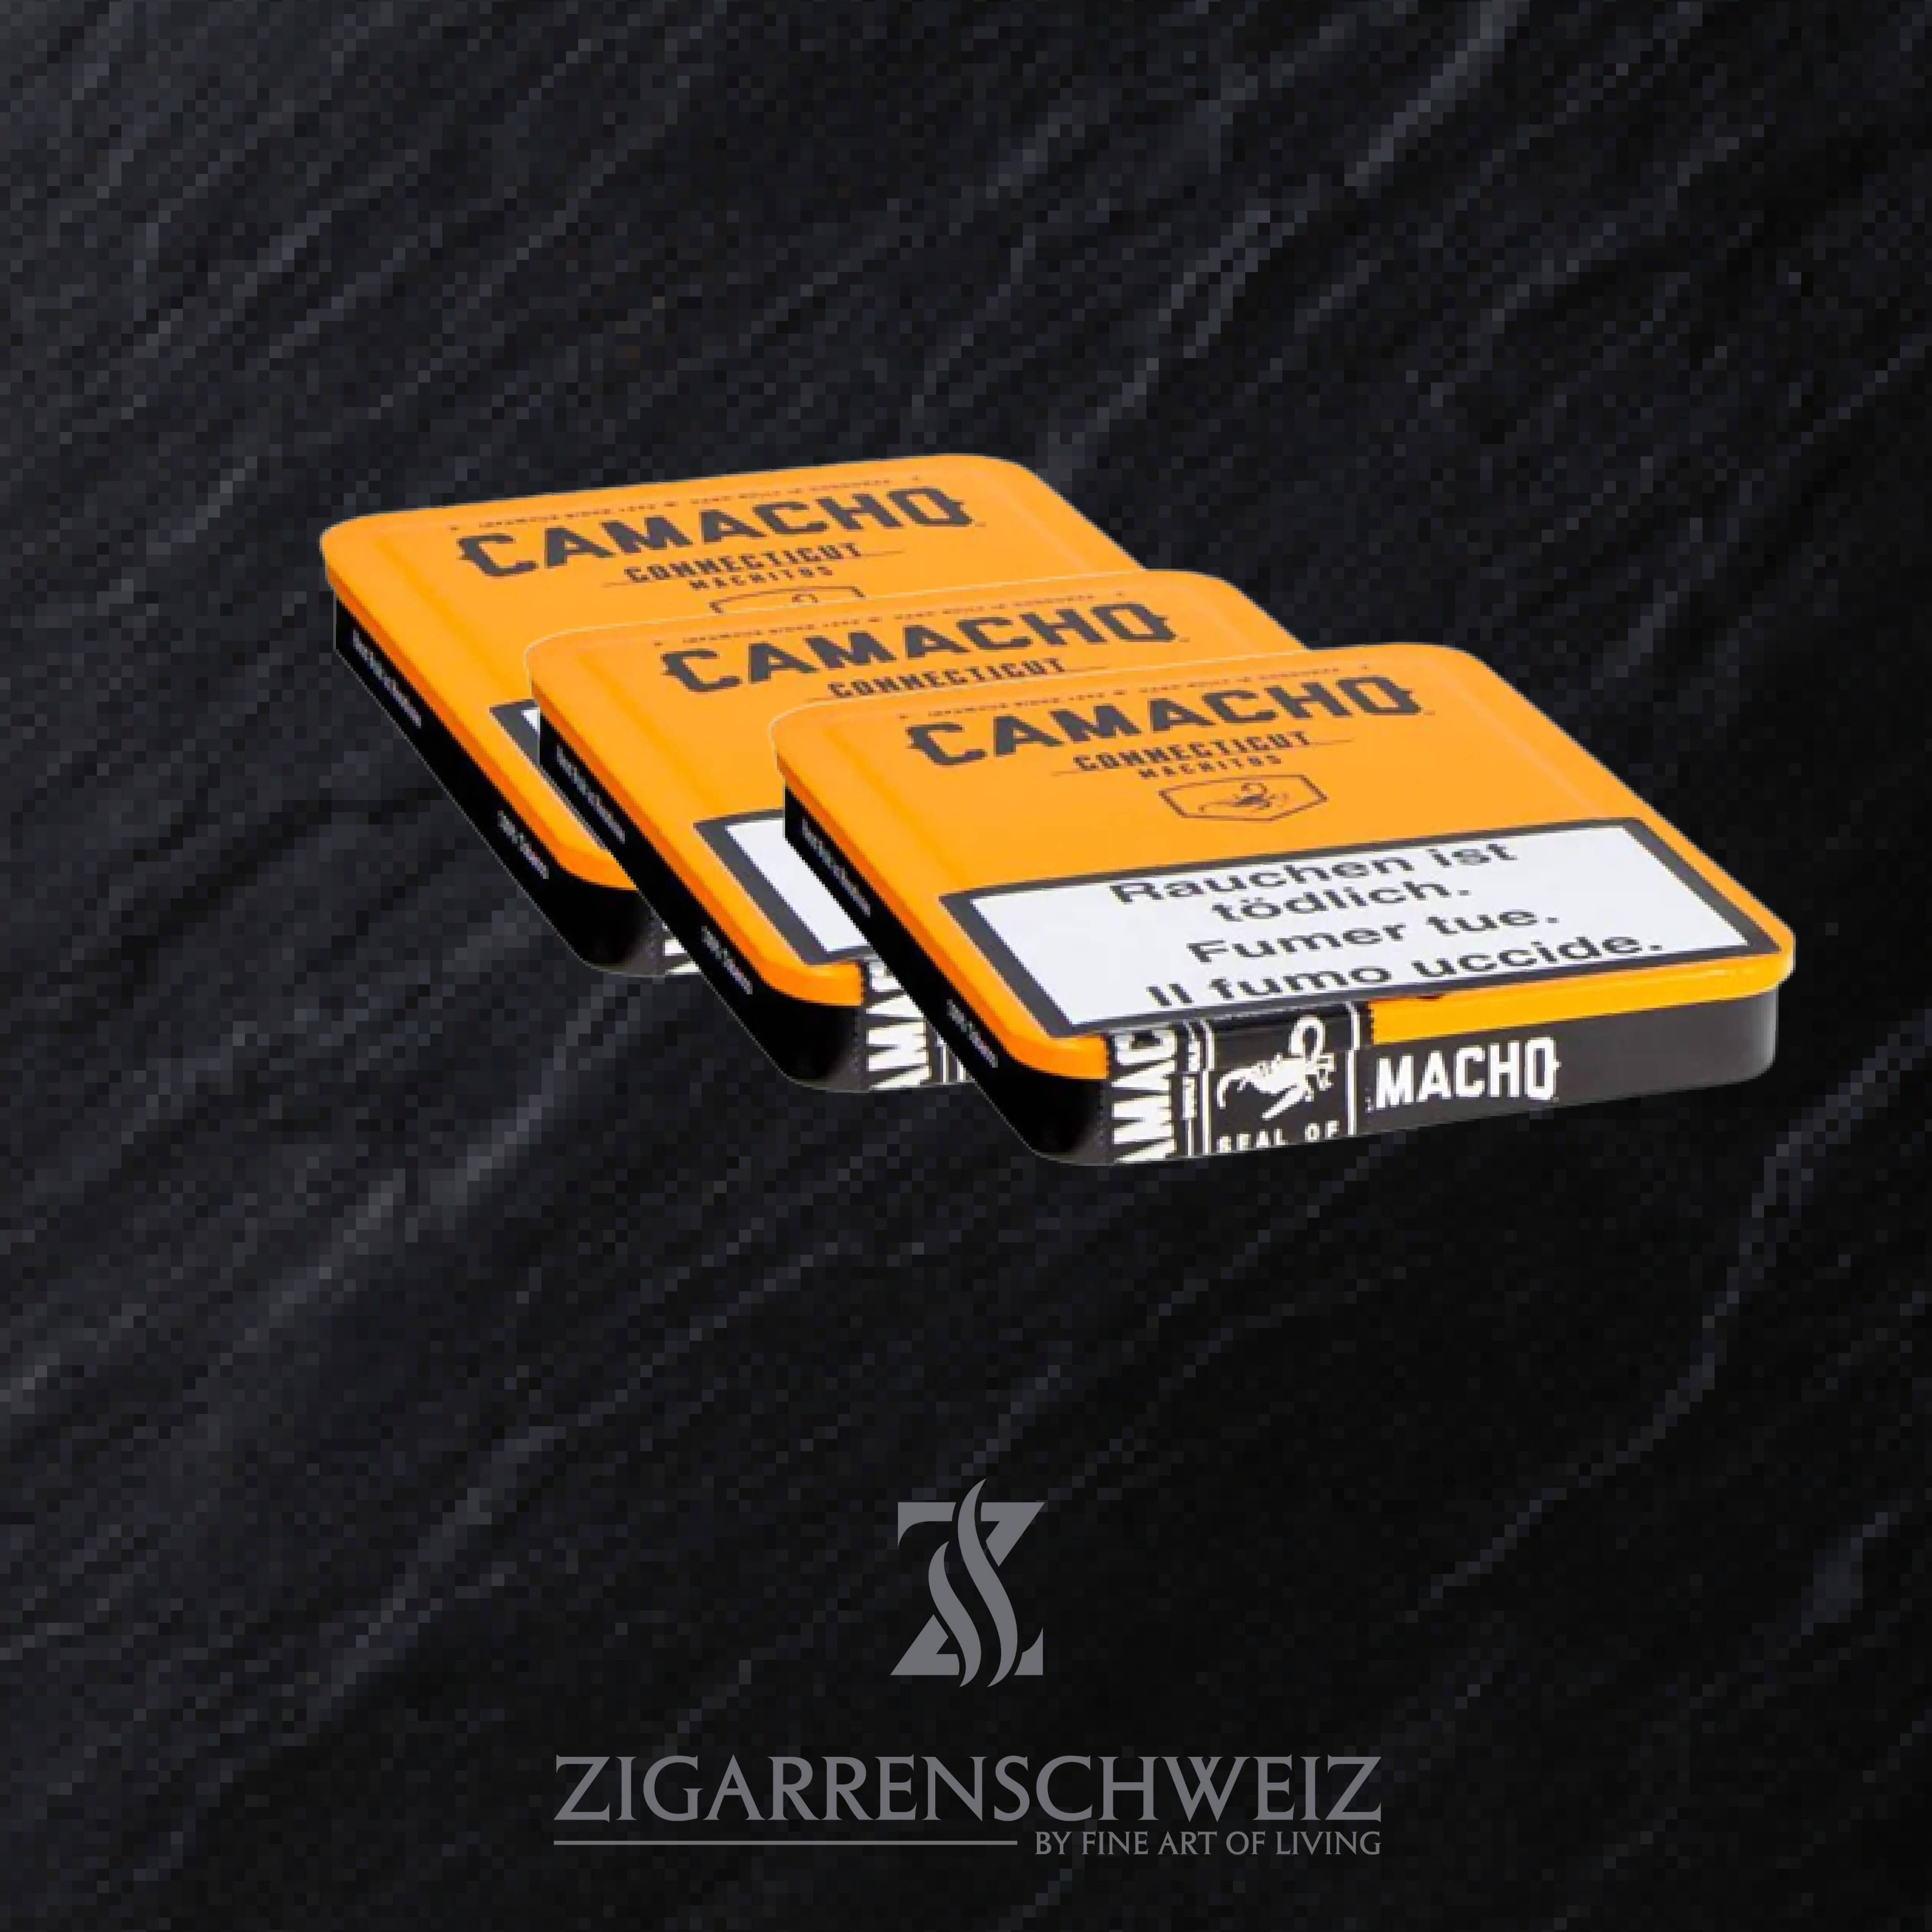 3 x Camacho Connecticut Machito Zigarren Tins (Blech Schachteln)